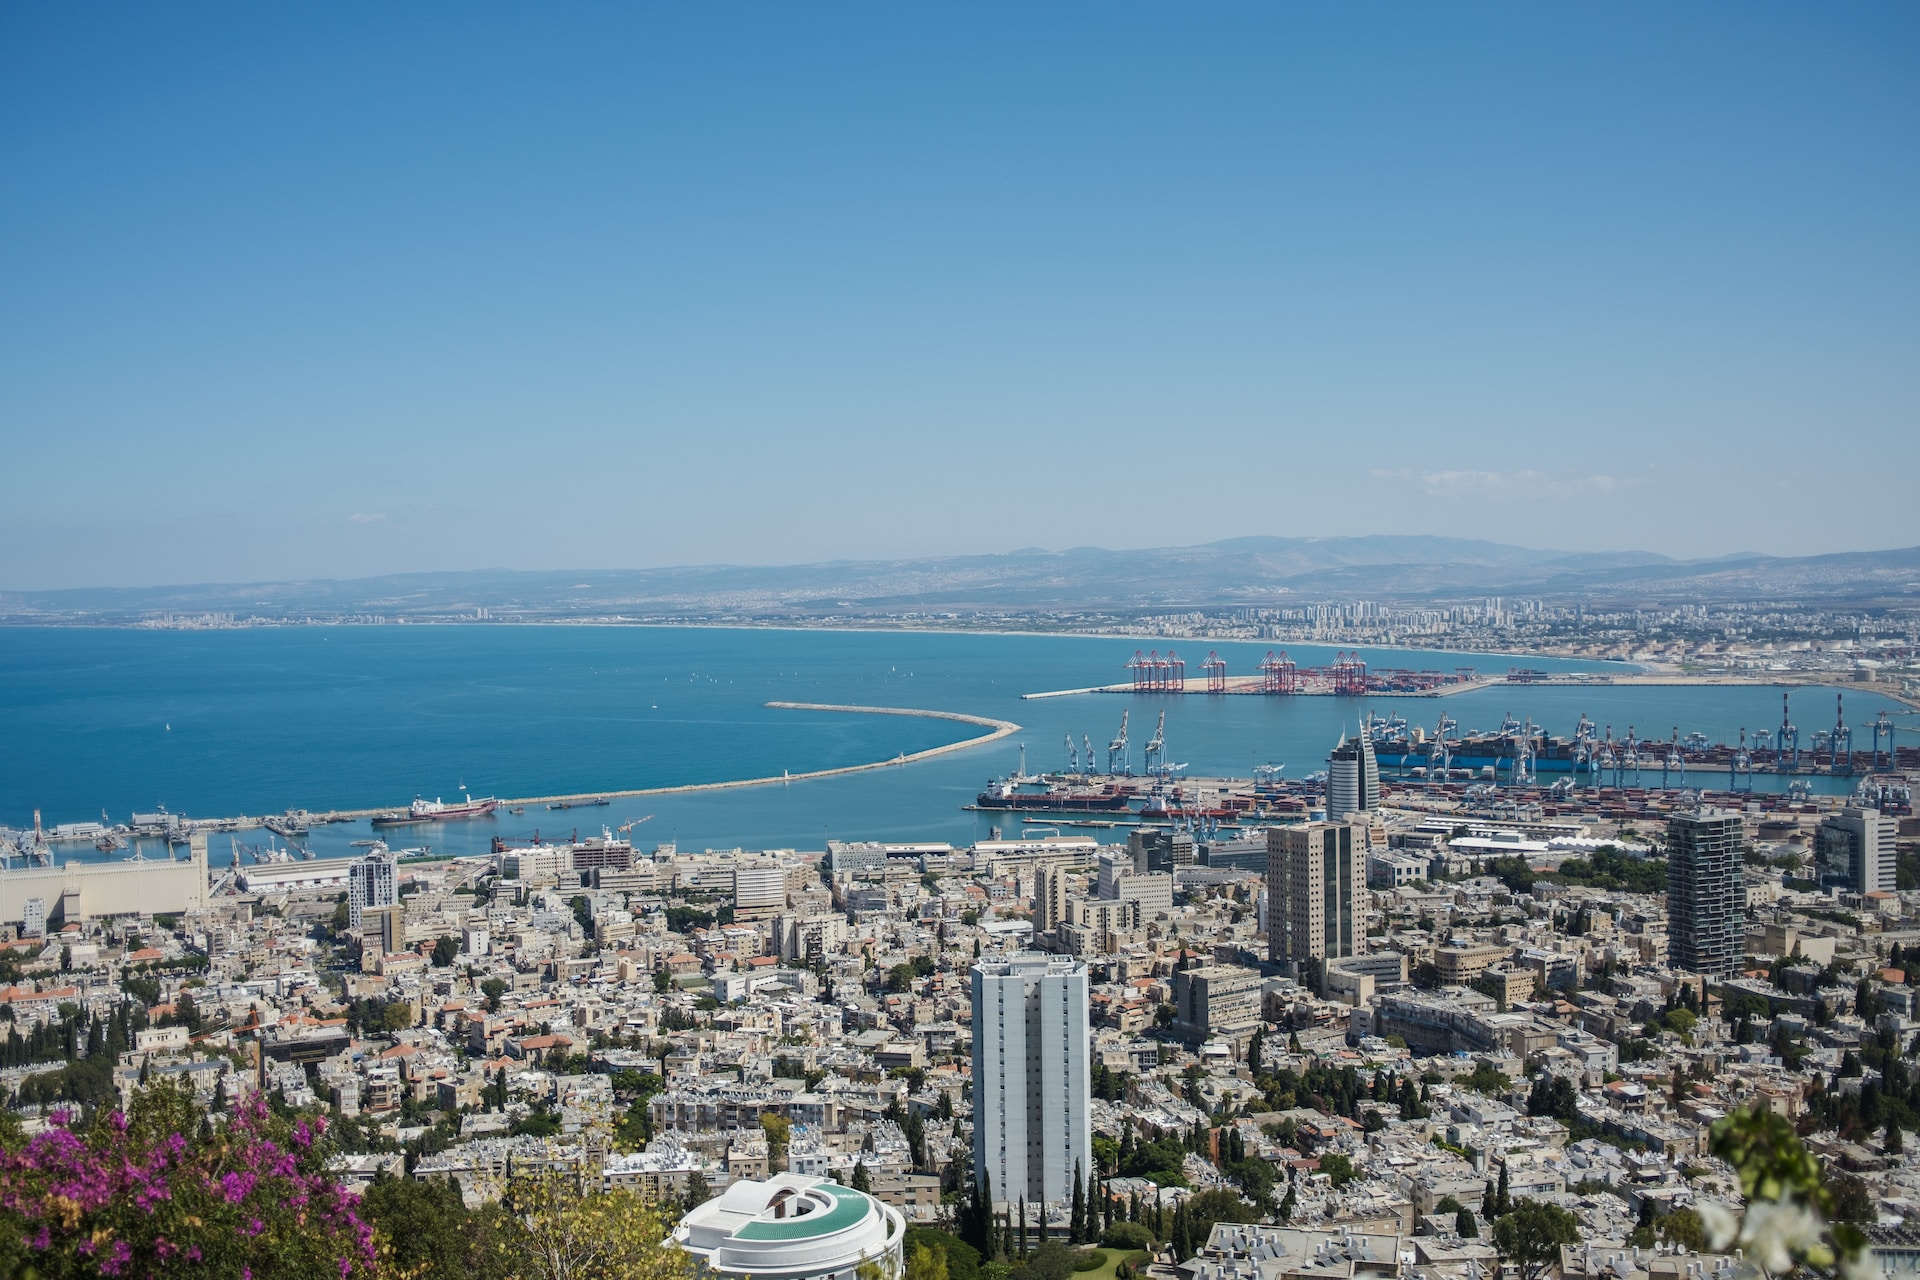 Haifa Port, Israel